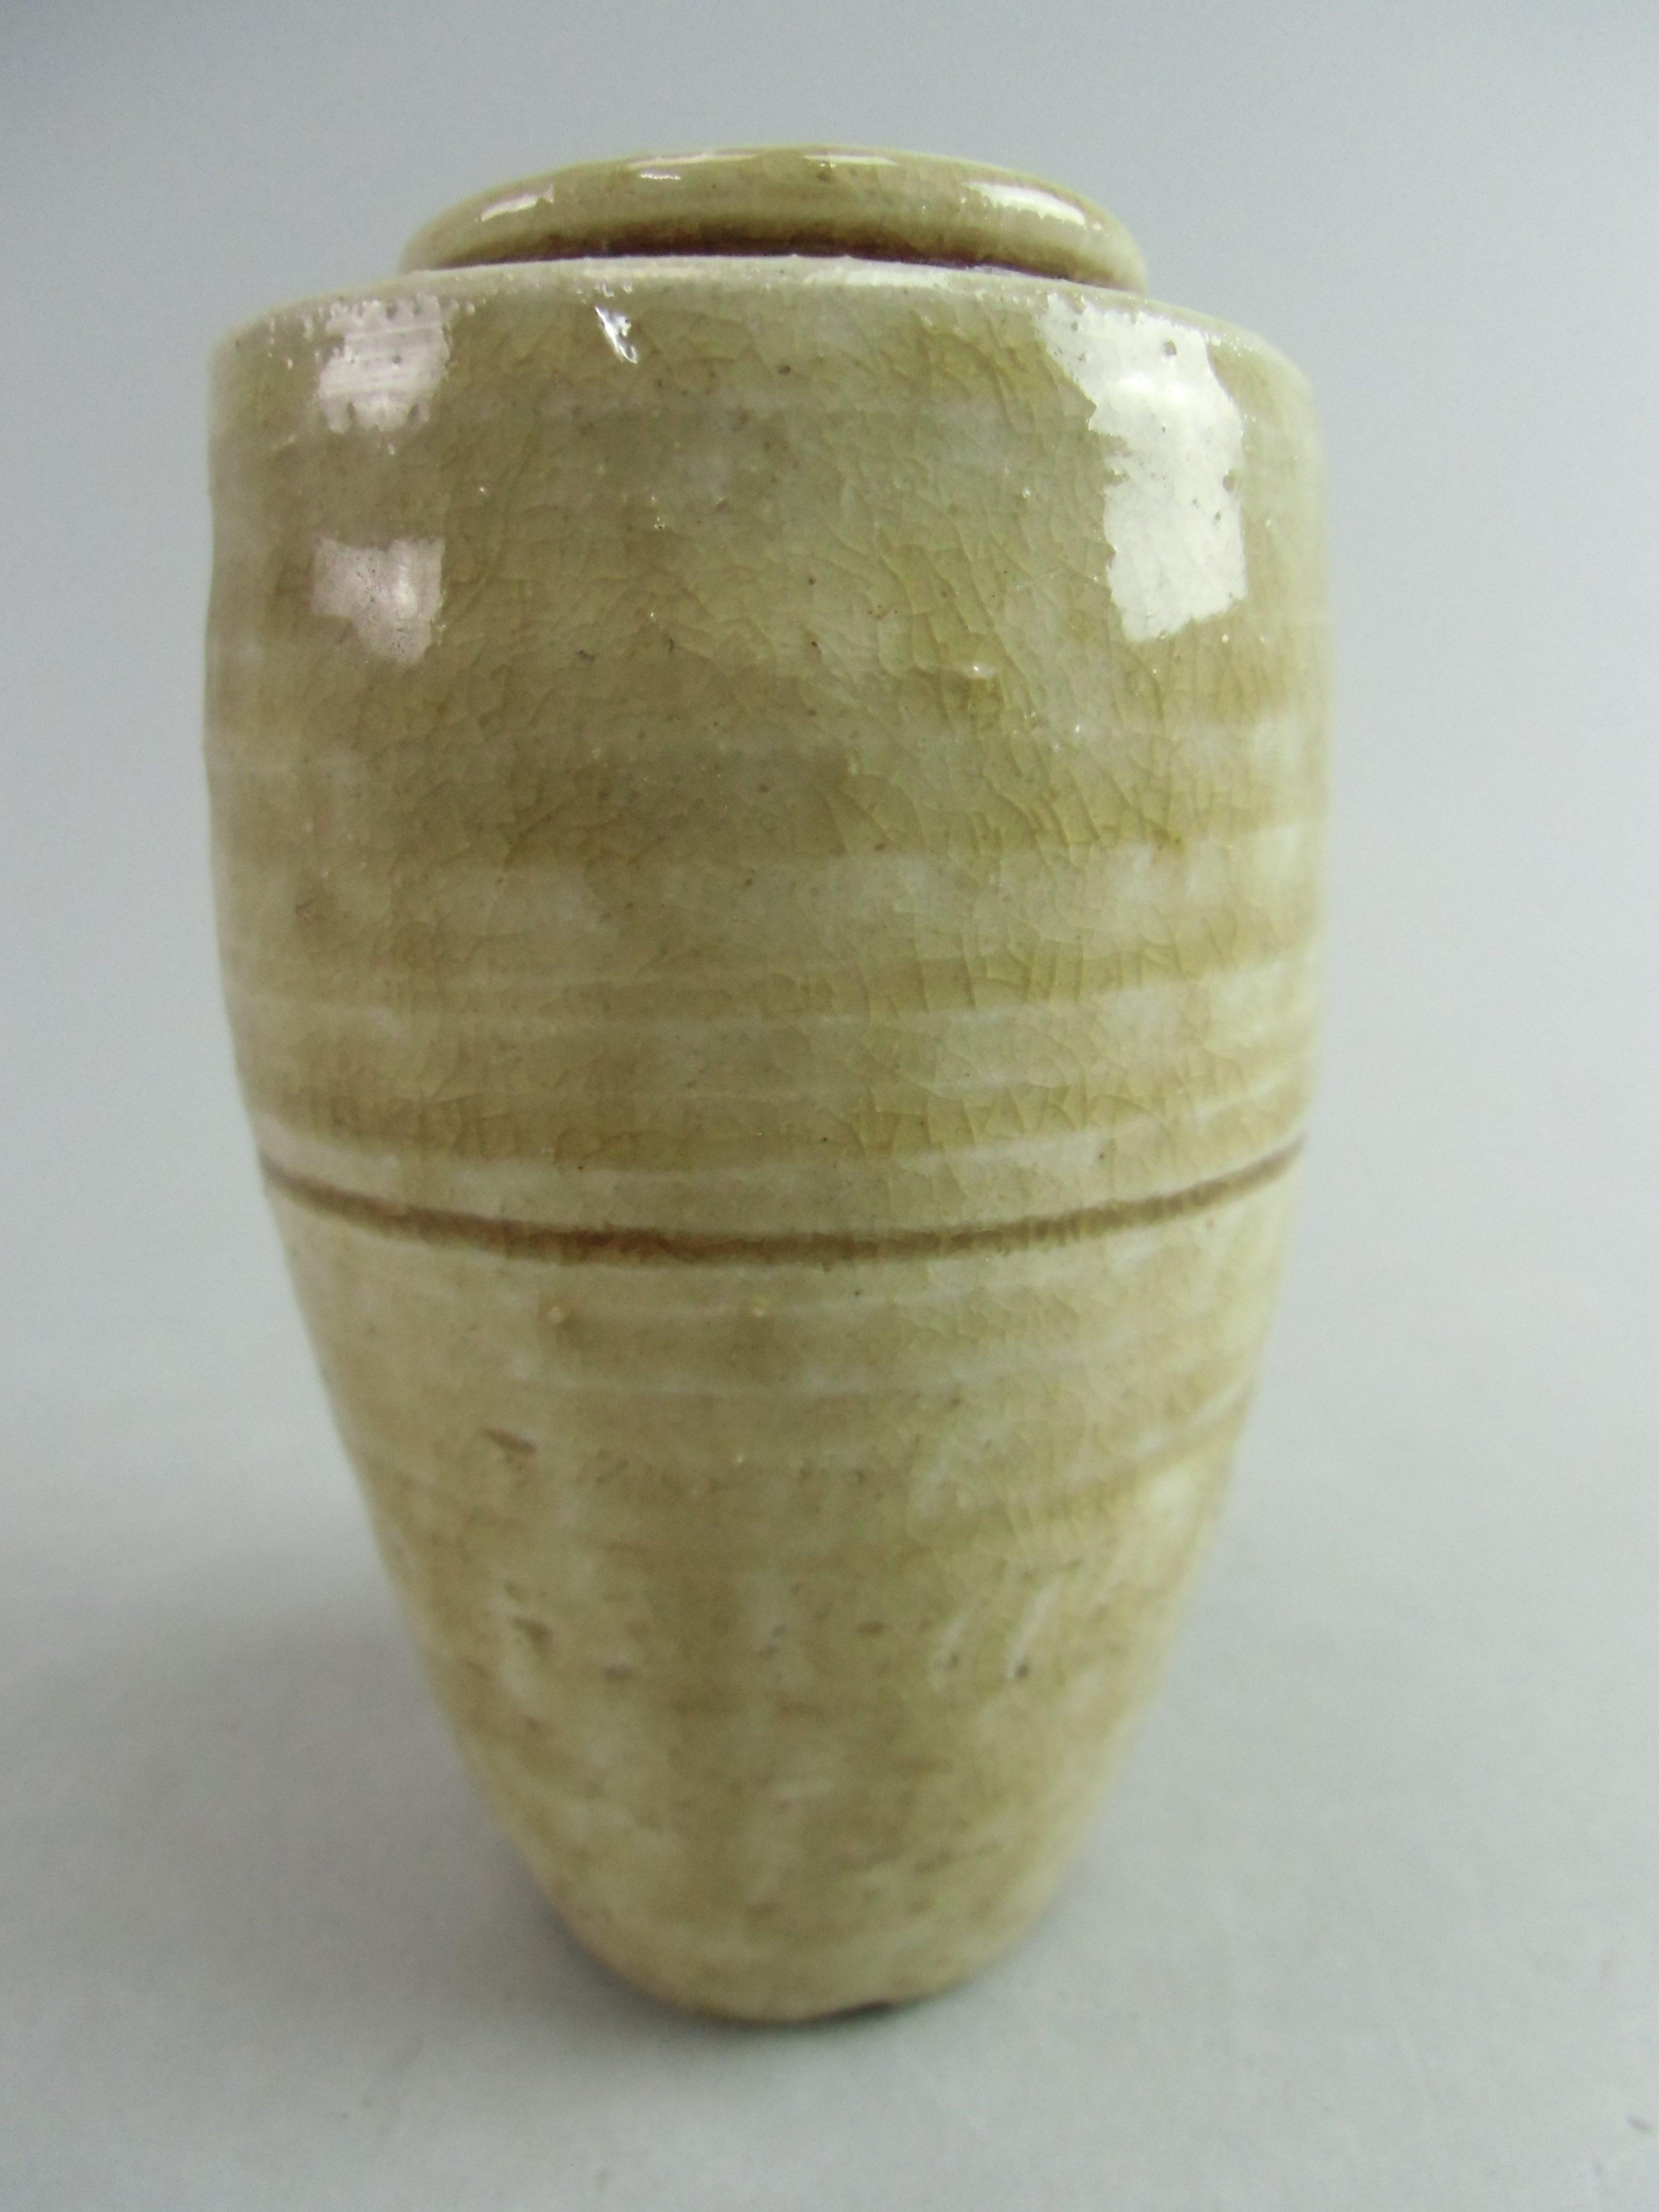 Japanese Ki Seto ware Mini Flower Vase Vtg Pottery Beige Green Ikebana MFV46